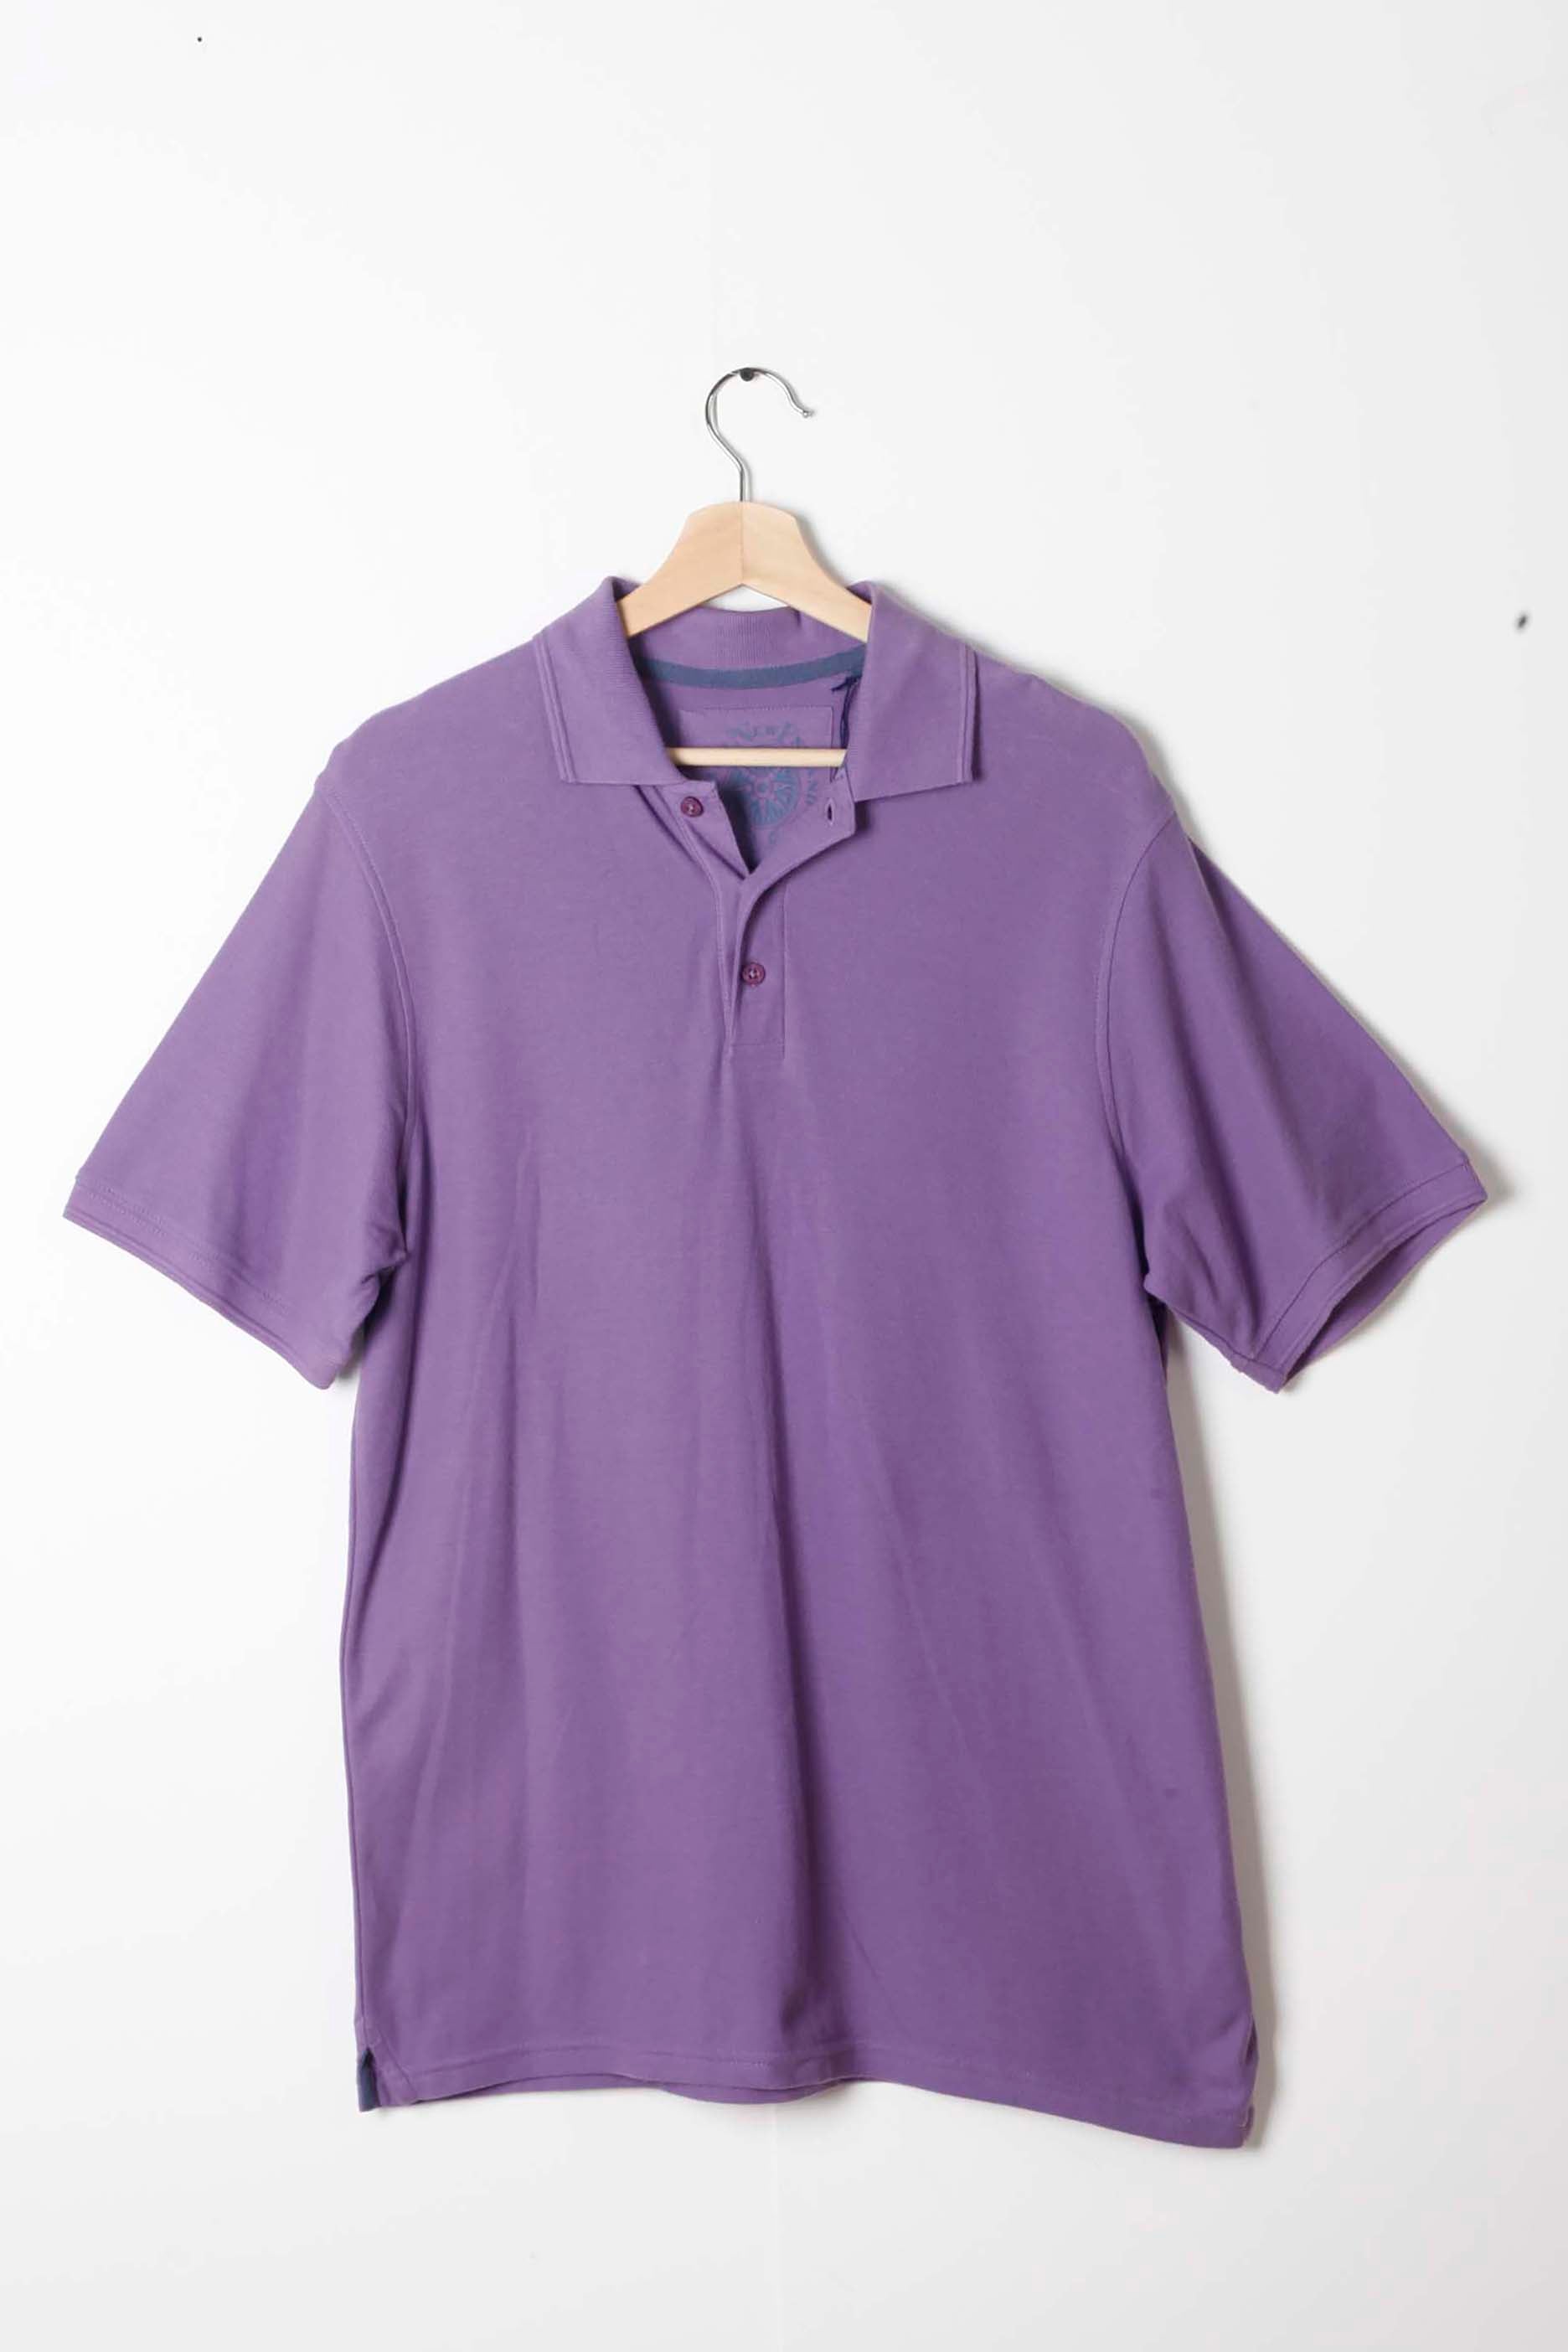 Mens Purple Polo Shirt (small/medium)